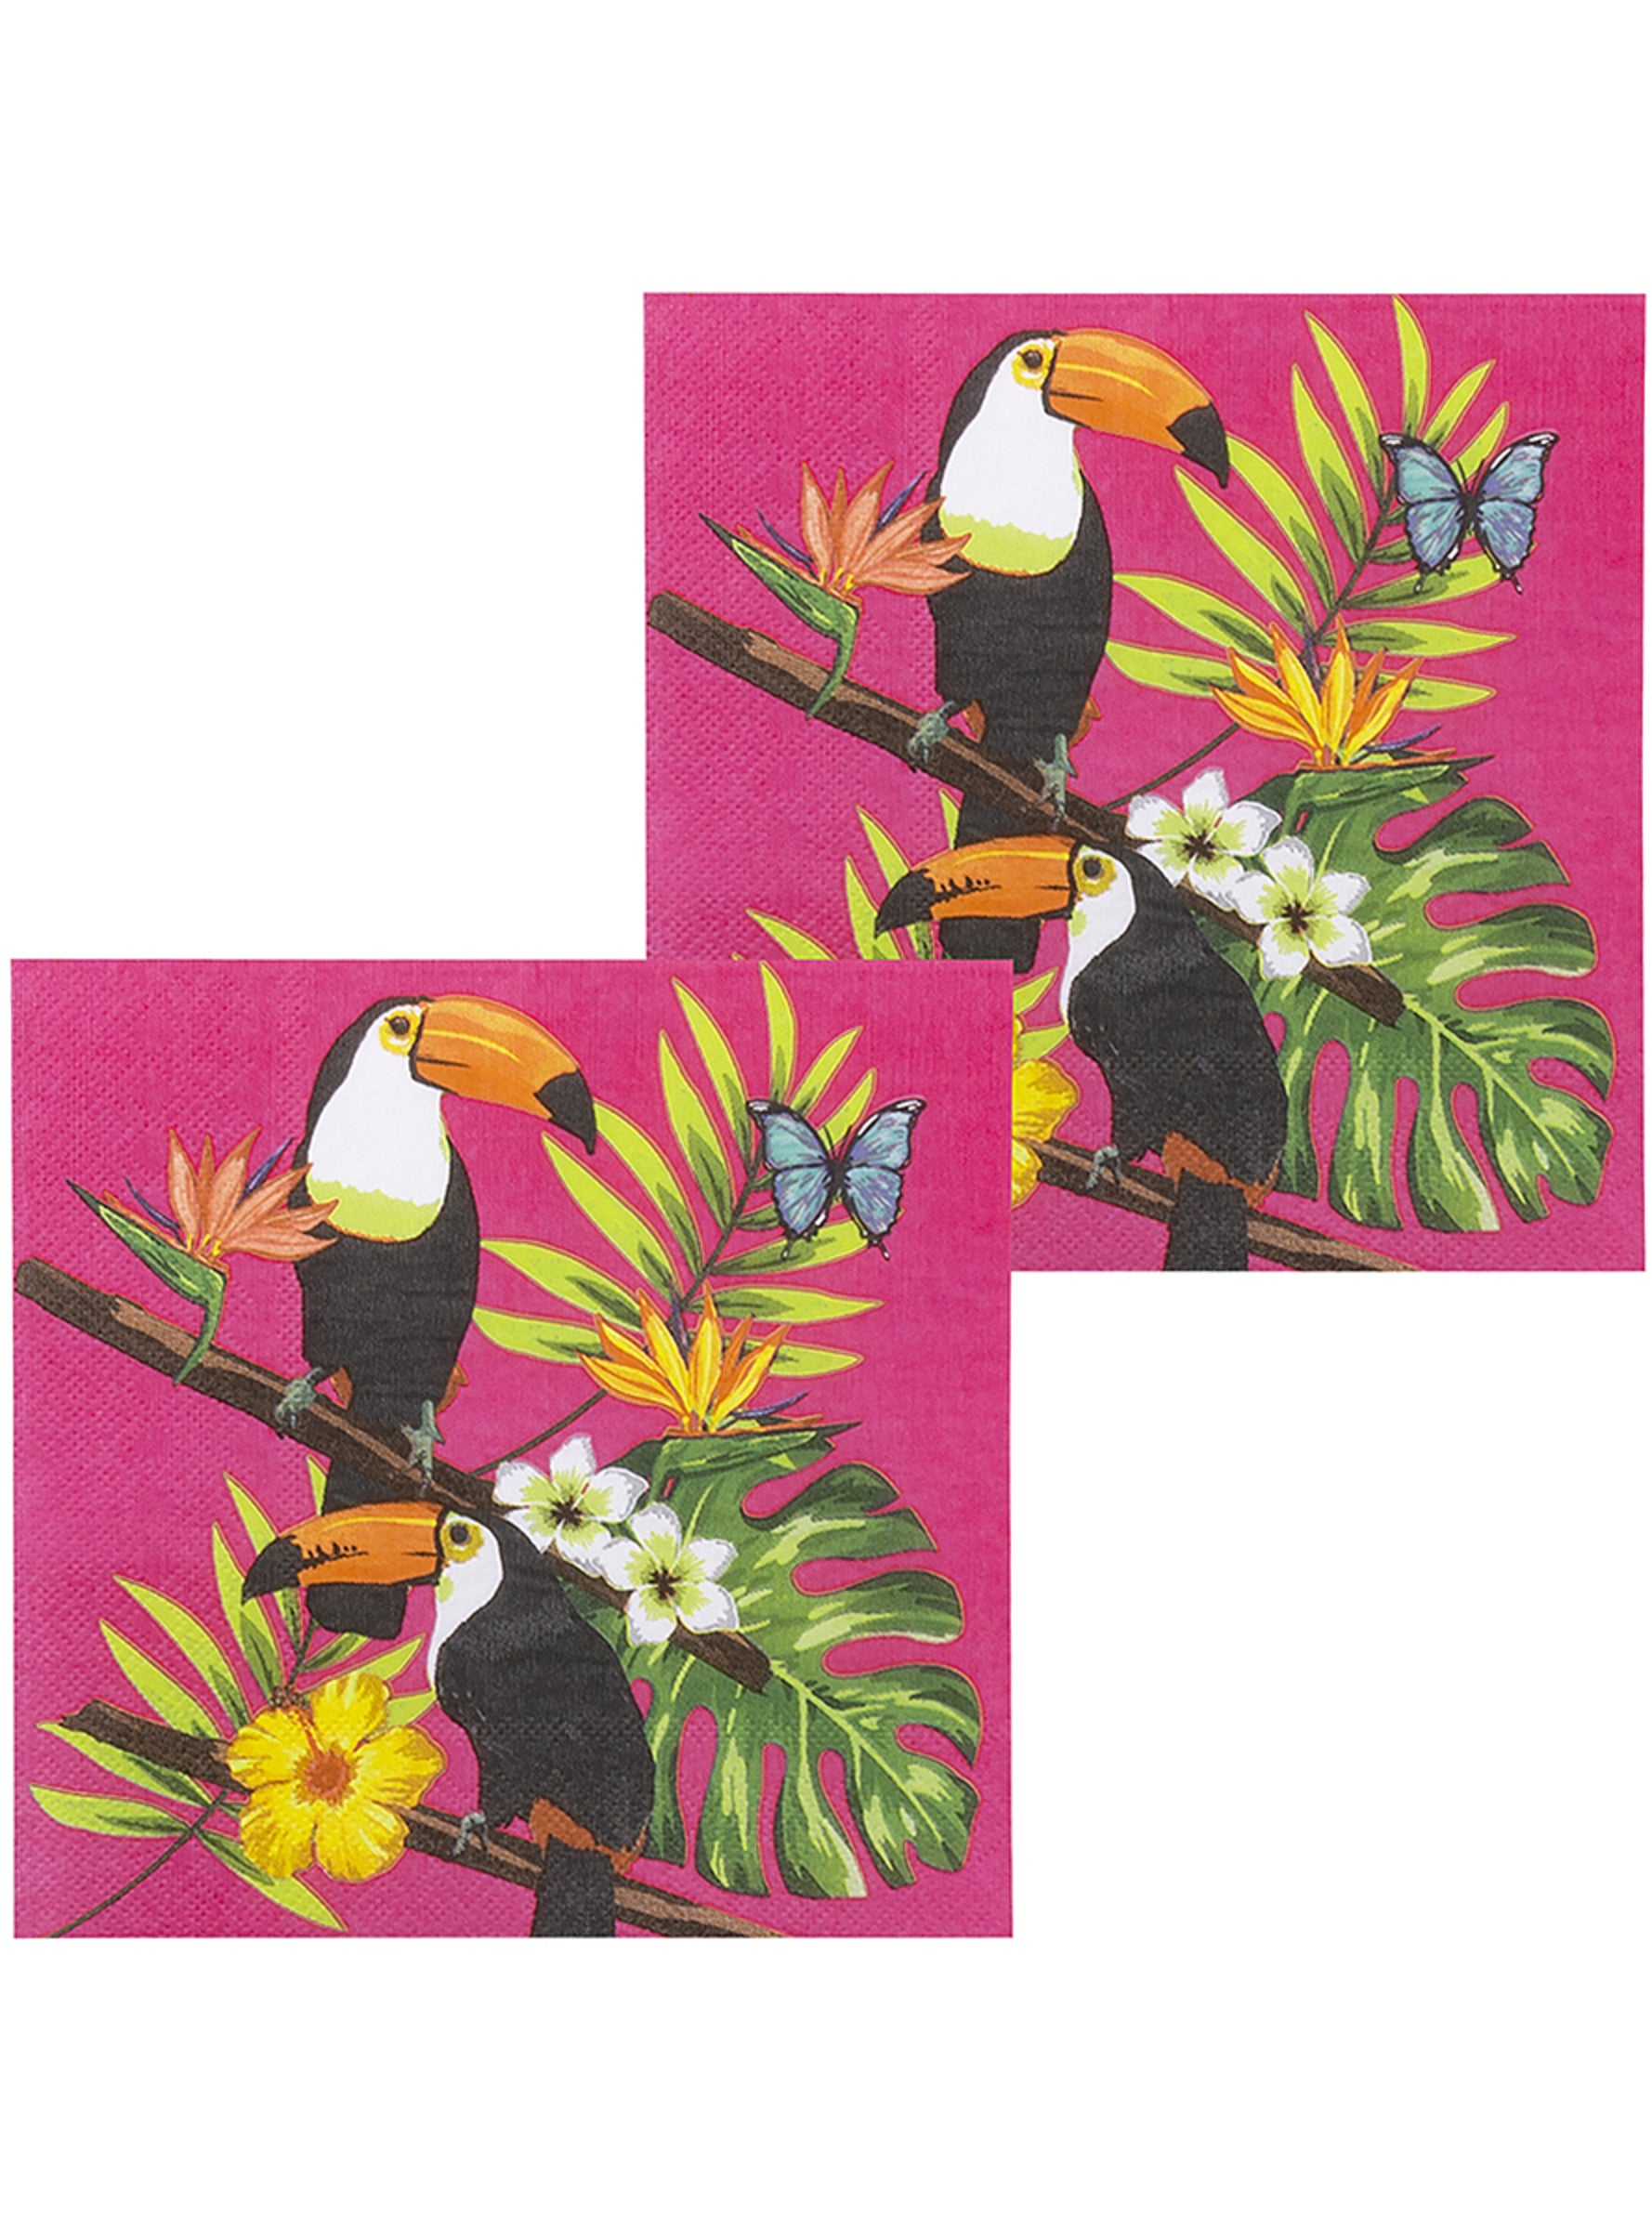 12 Serviettes en papier toucans (33x33 cm) - Toucan Party | 12 serviettes en papier.  Dimensions : Pliées  - 16,5x16,5cm. Dépliées - 33x33cm.  | J2F Shop